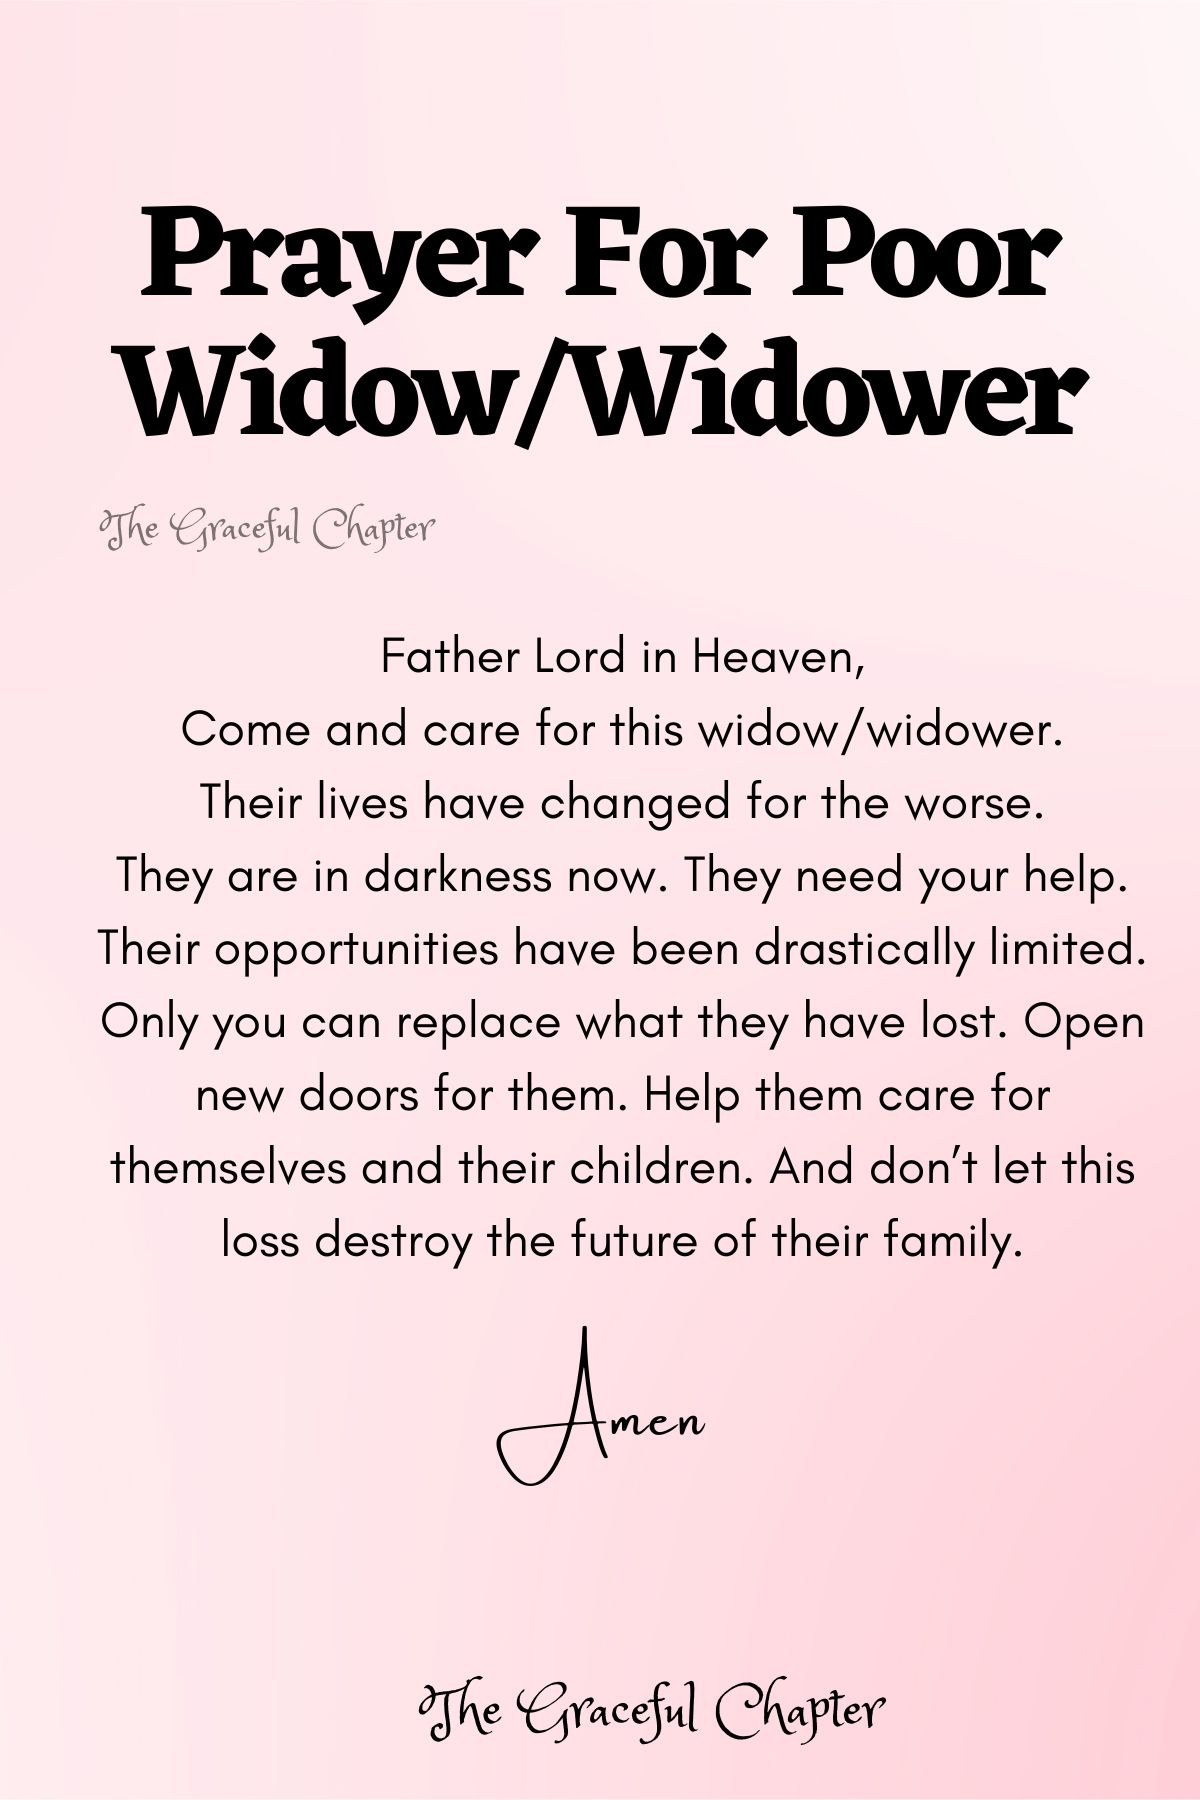 Prayer for poor widow/widower